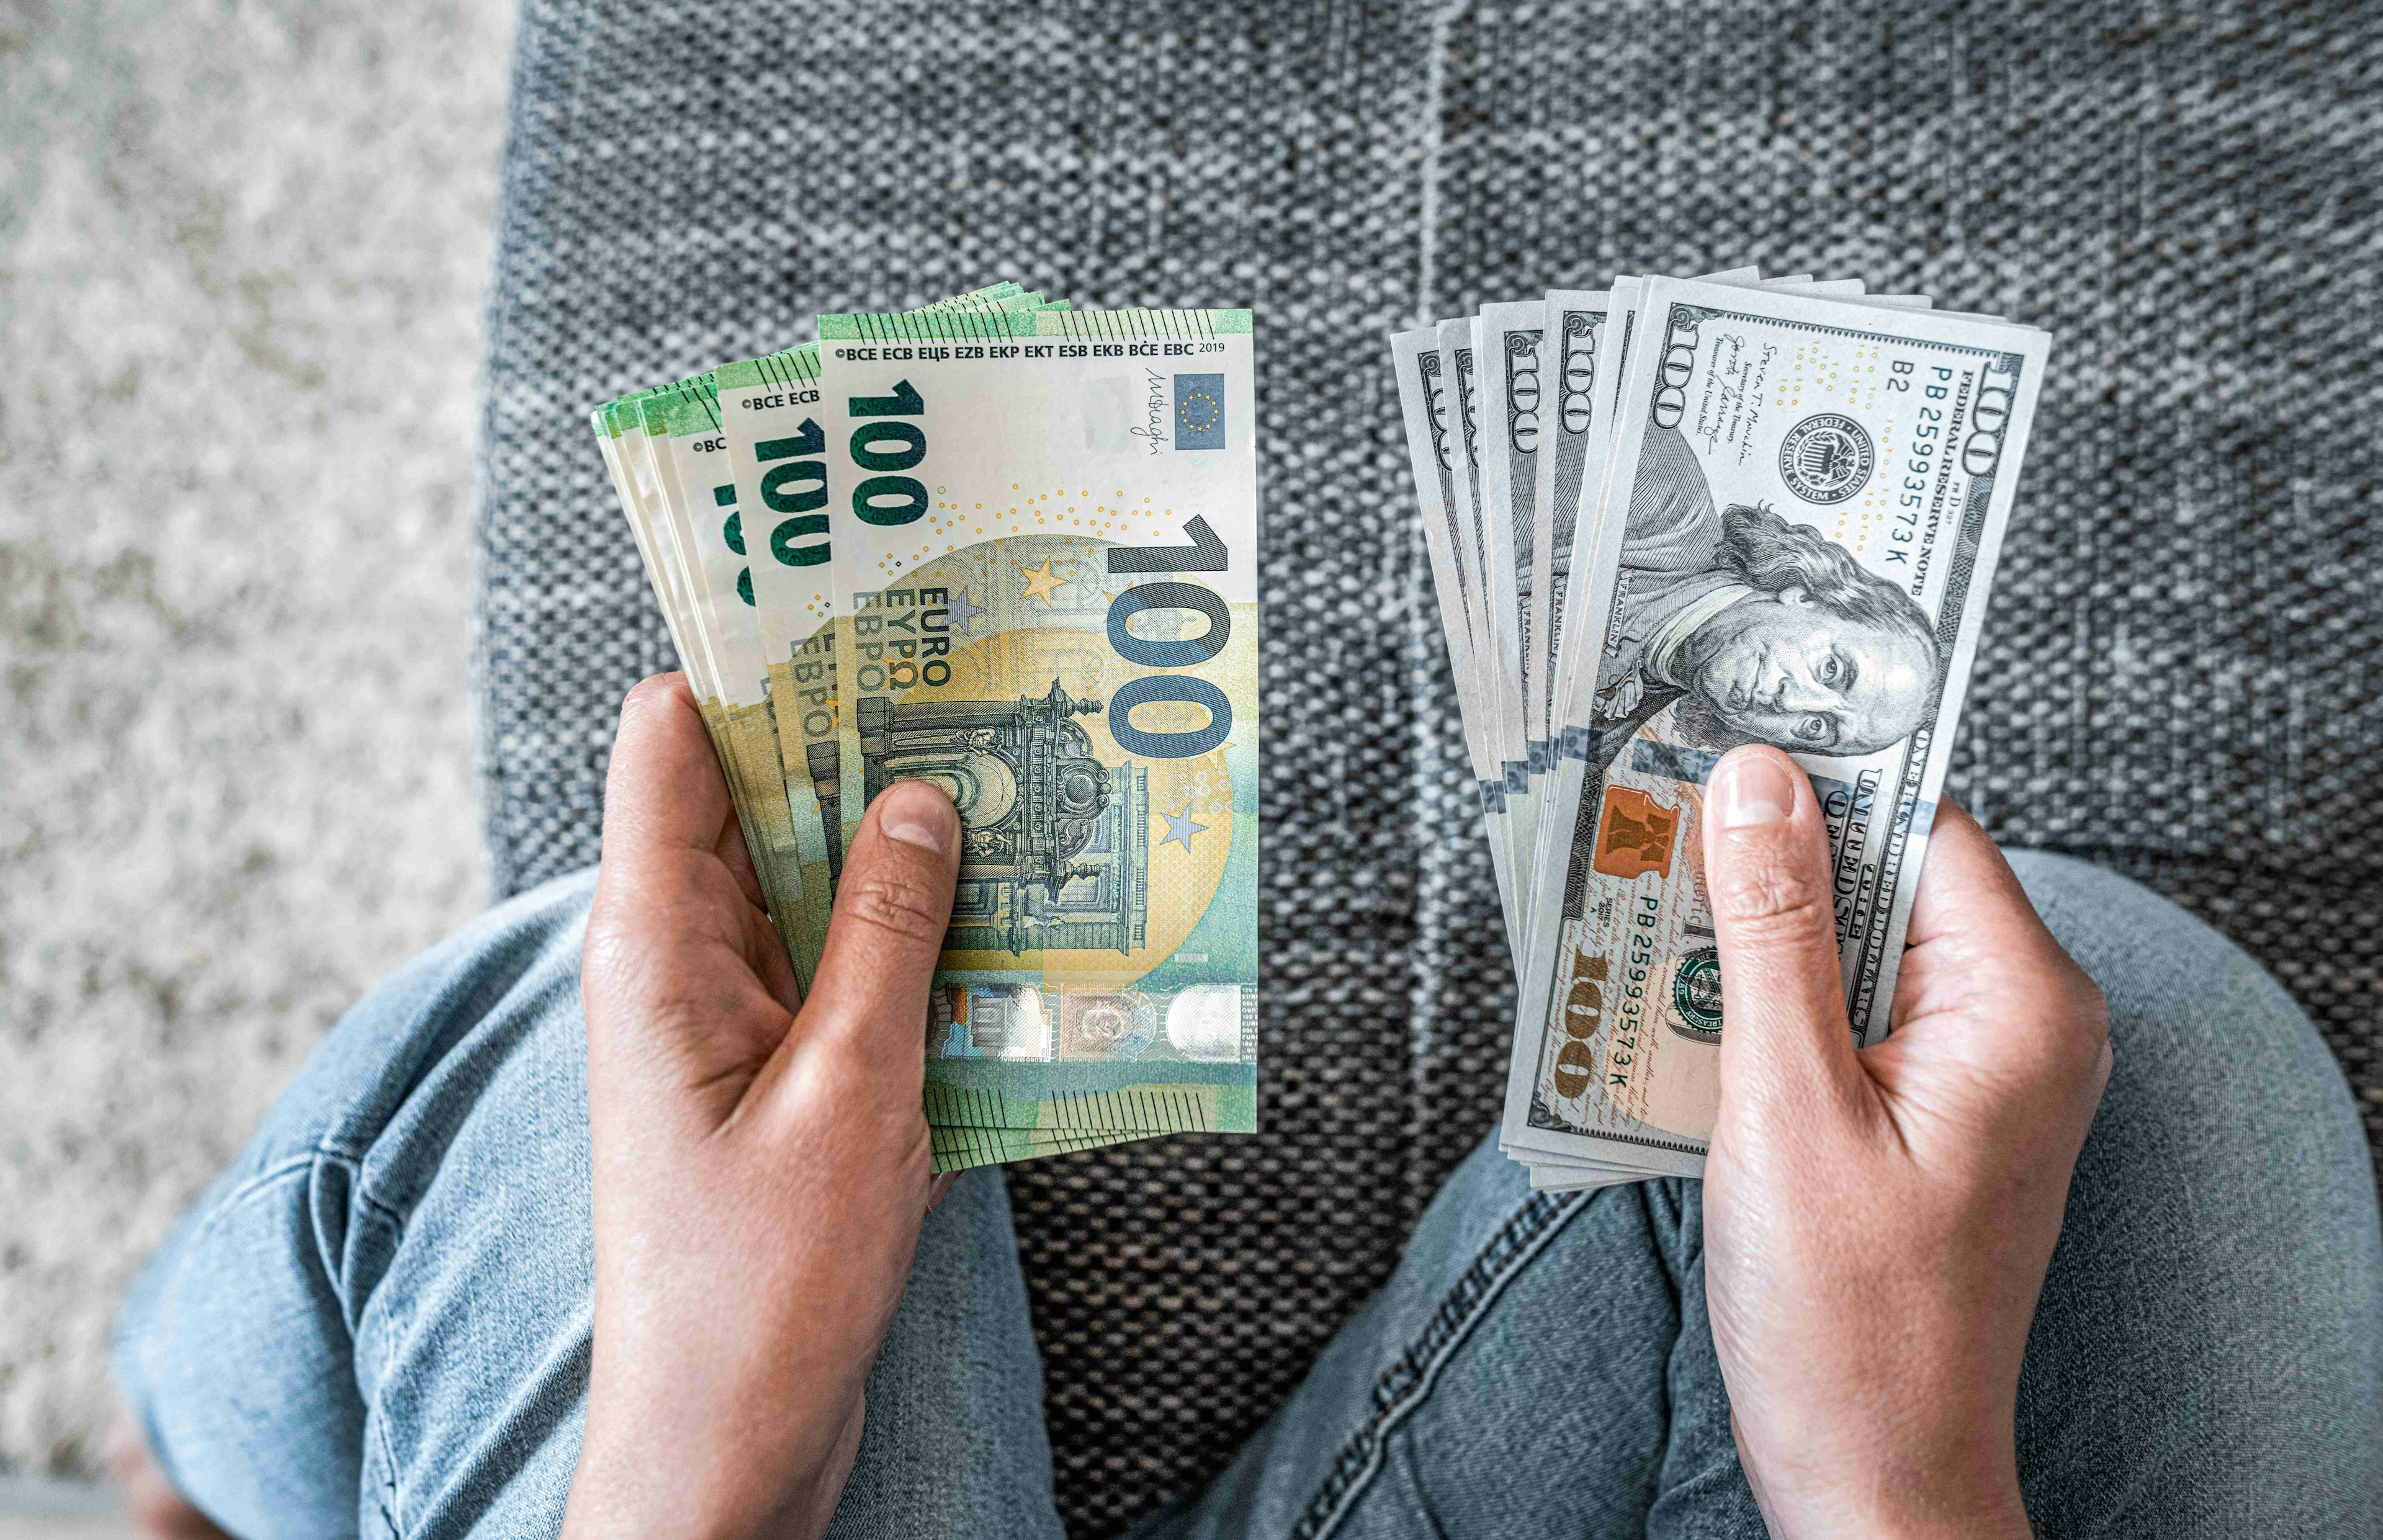 Pessoa sentada de calça jeans, segurando notas de euro na mão esquerda e notas de dólar americano na mão direita.